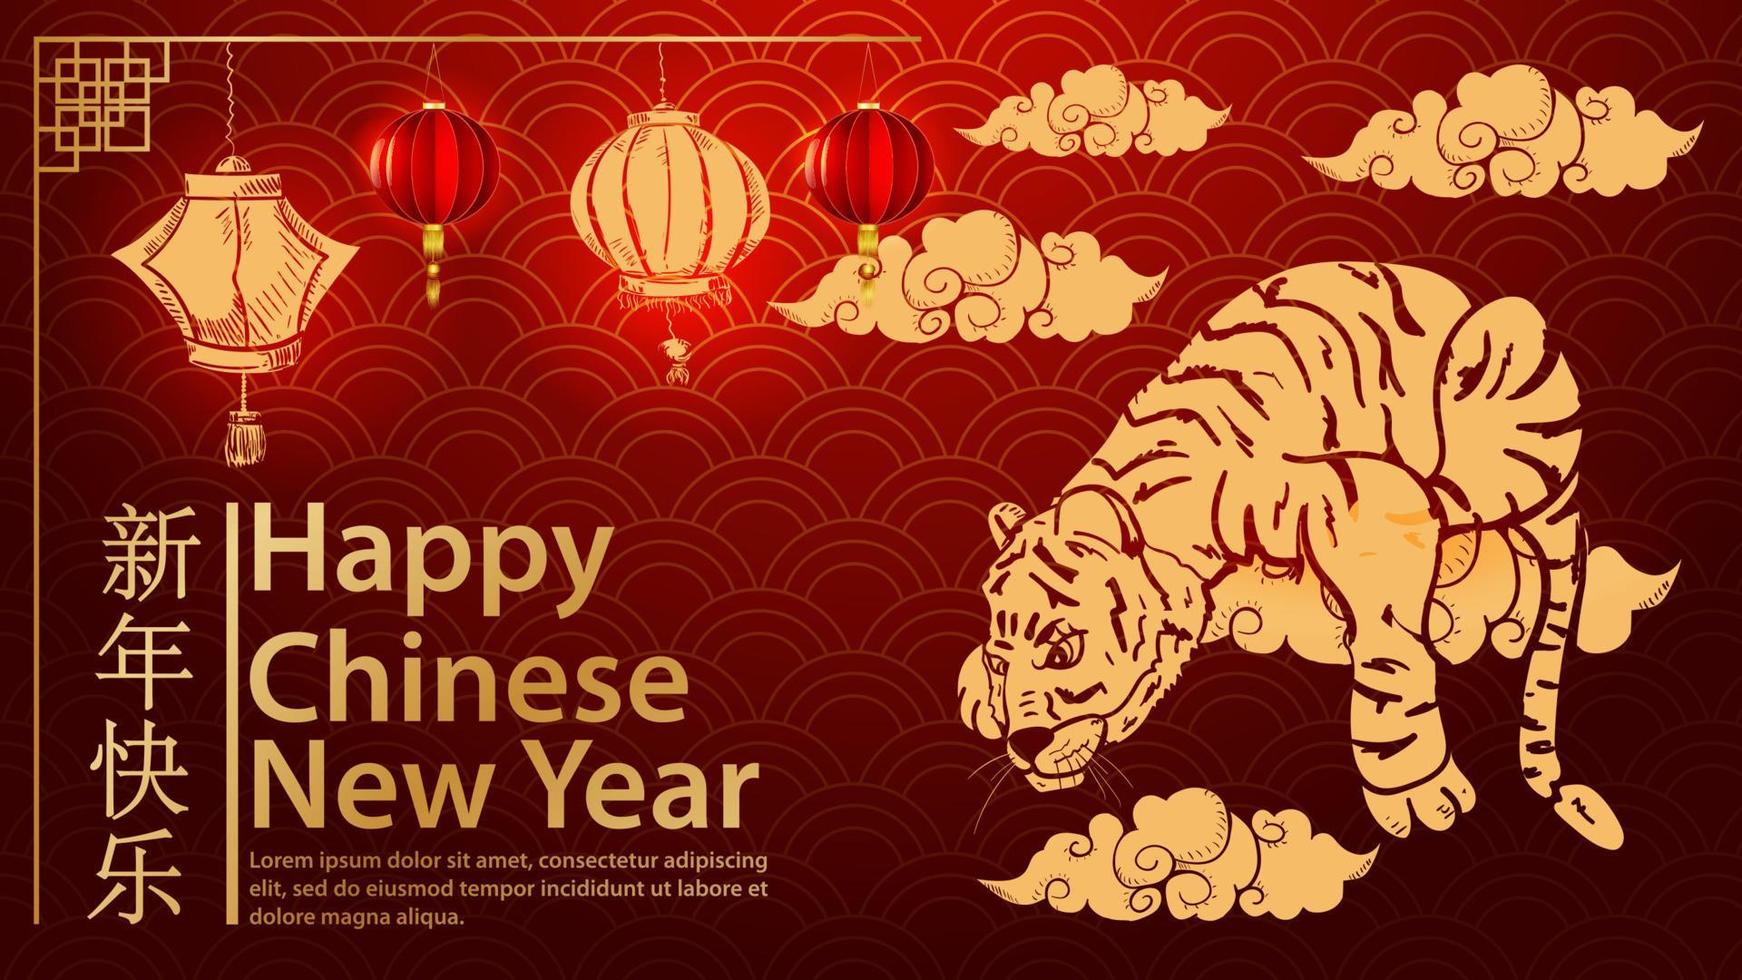 o tigre está deitado em uma nuvem com suas patas balançando o símbolo do ano novo chinês e a inscrição parabéns onda de fundo vermelho vetor